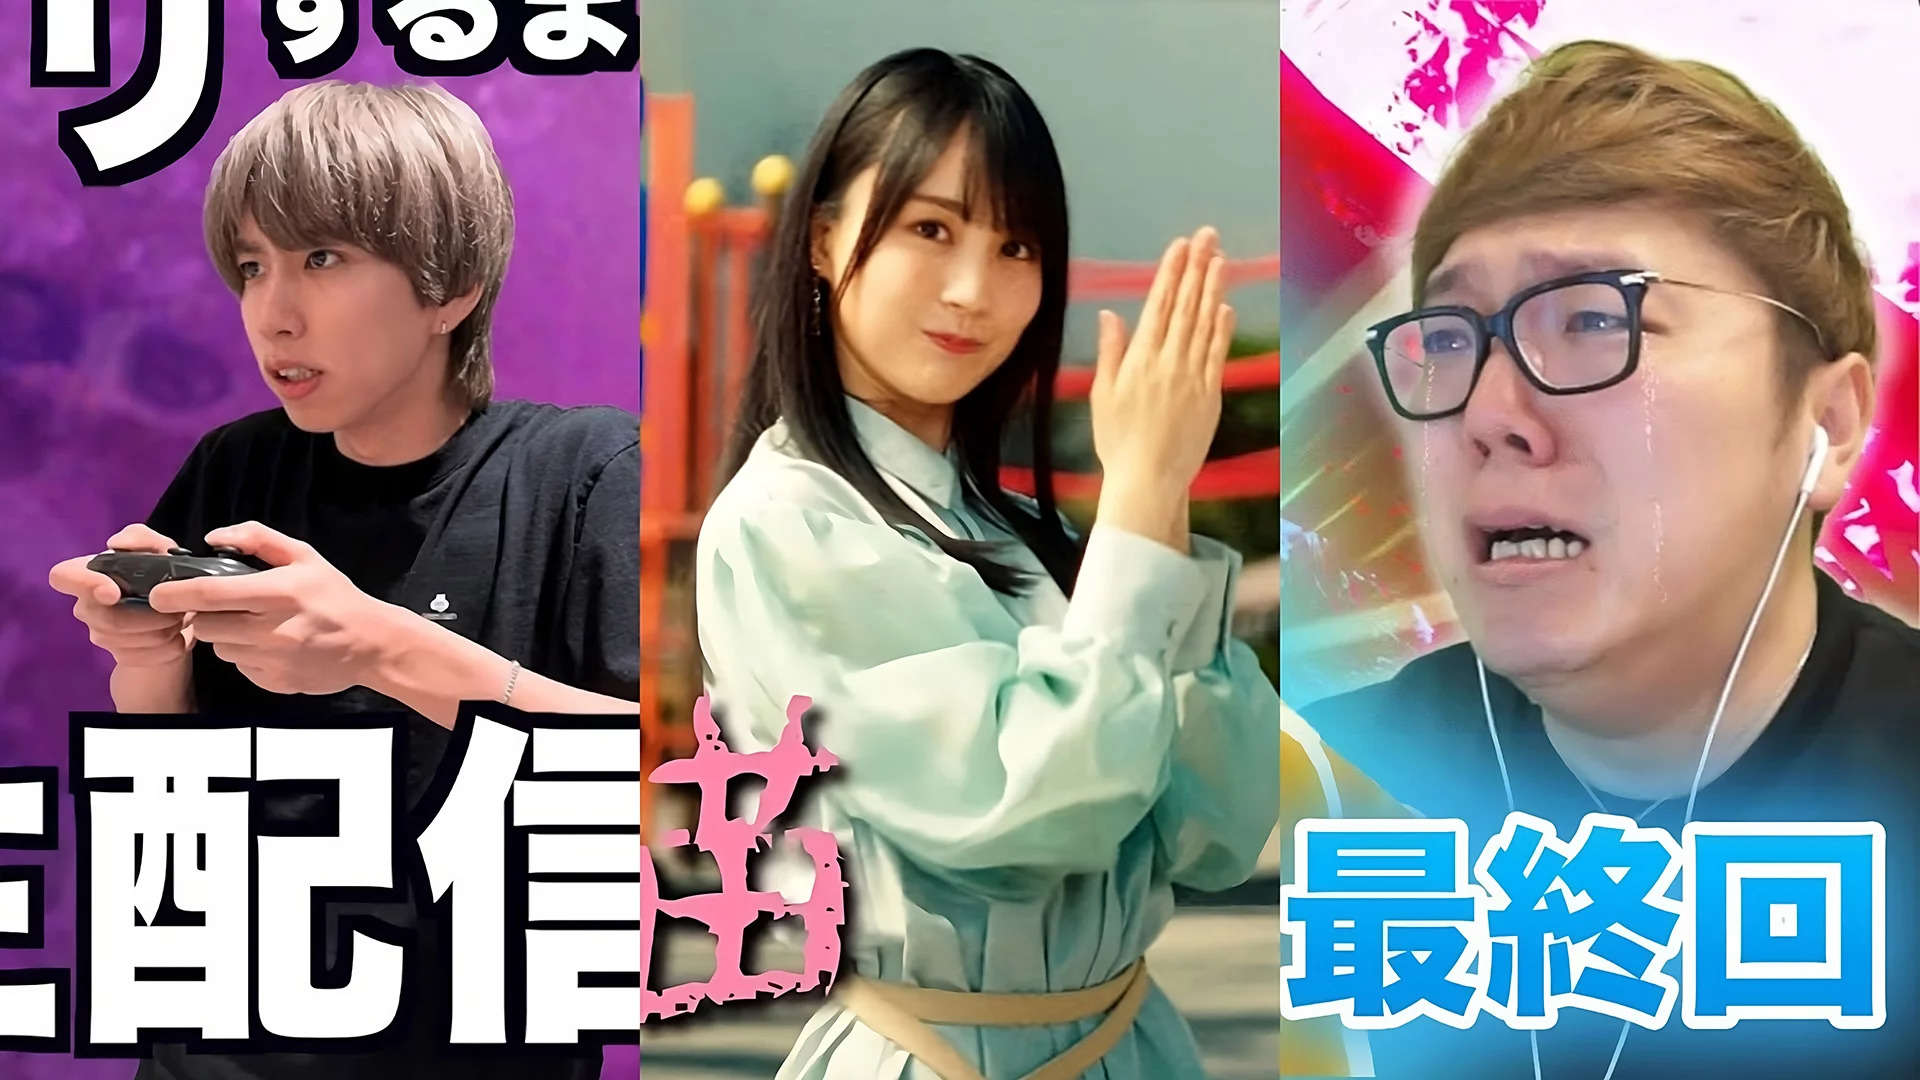 Top 10 Gaming Youtubers In Japan 